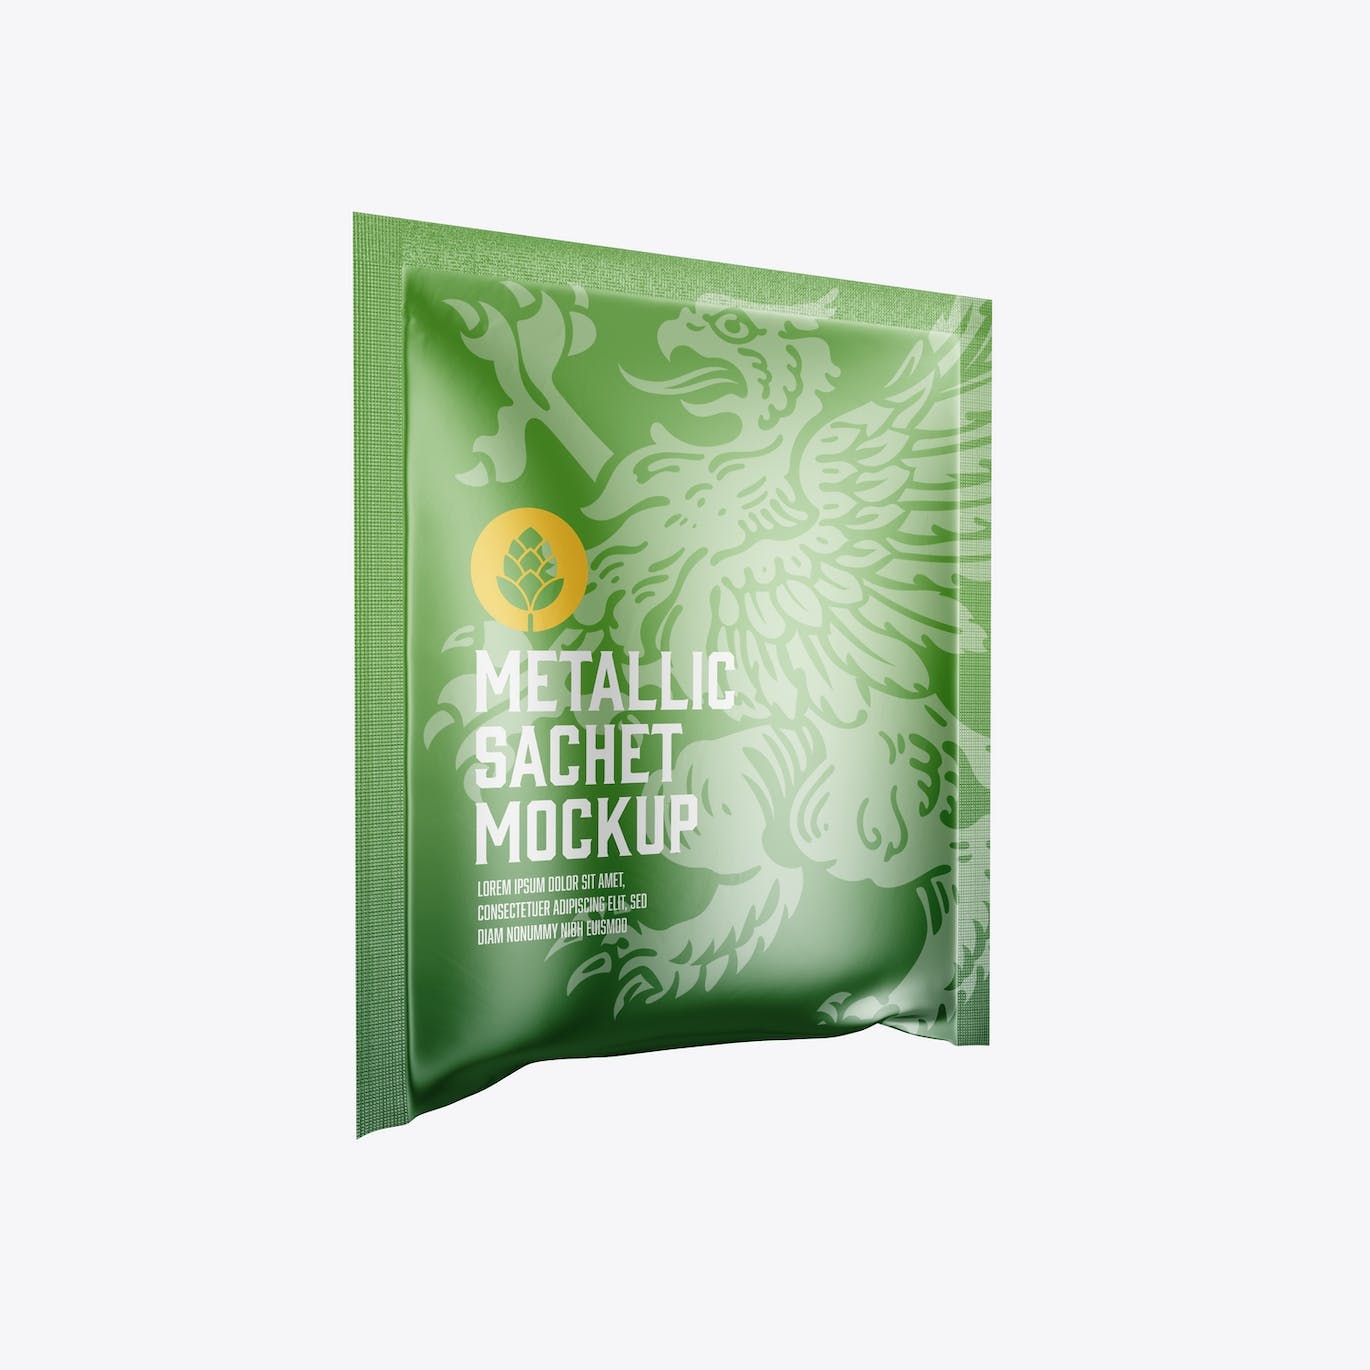 金属材质包装袋设计样机图 Metallic Sachet Mockup 样机素材 第6张